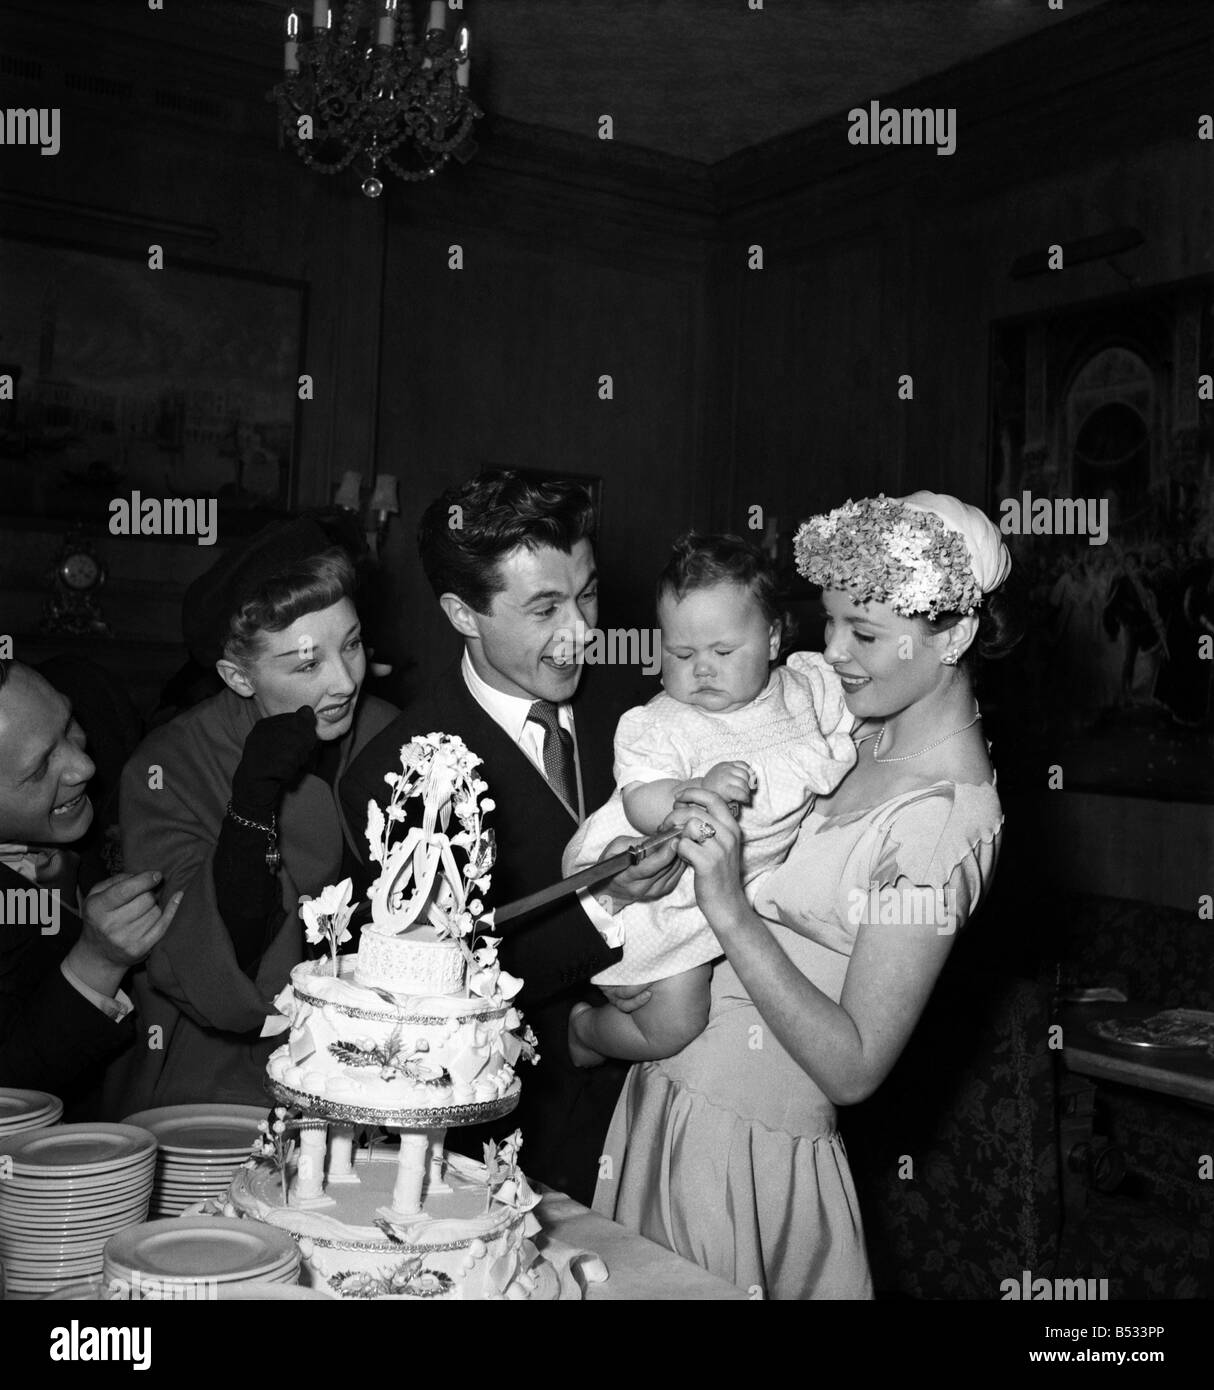 Hochzeit von Schauspieler Bryan Forbes und Schauspielerin Constance Smith - Katina Noble, im Alter von 1 Jahr, die ihren Geburtstag bei der Hochzeit feierte. Februar 1951 B679-001 Stockfoto